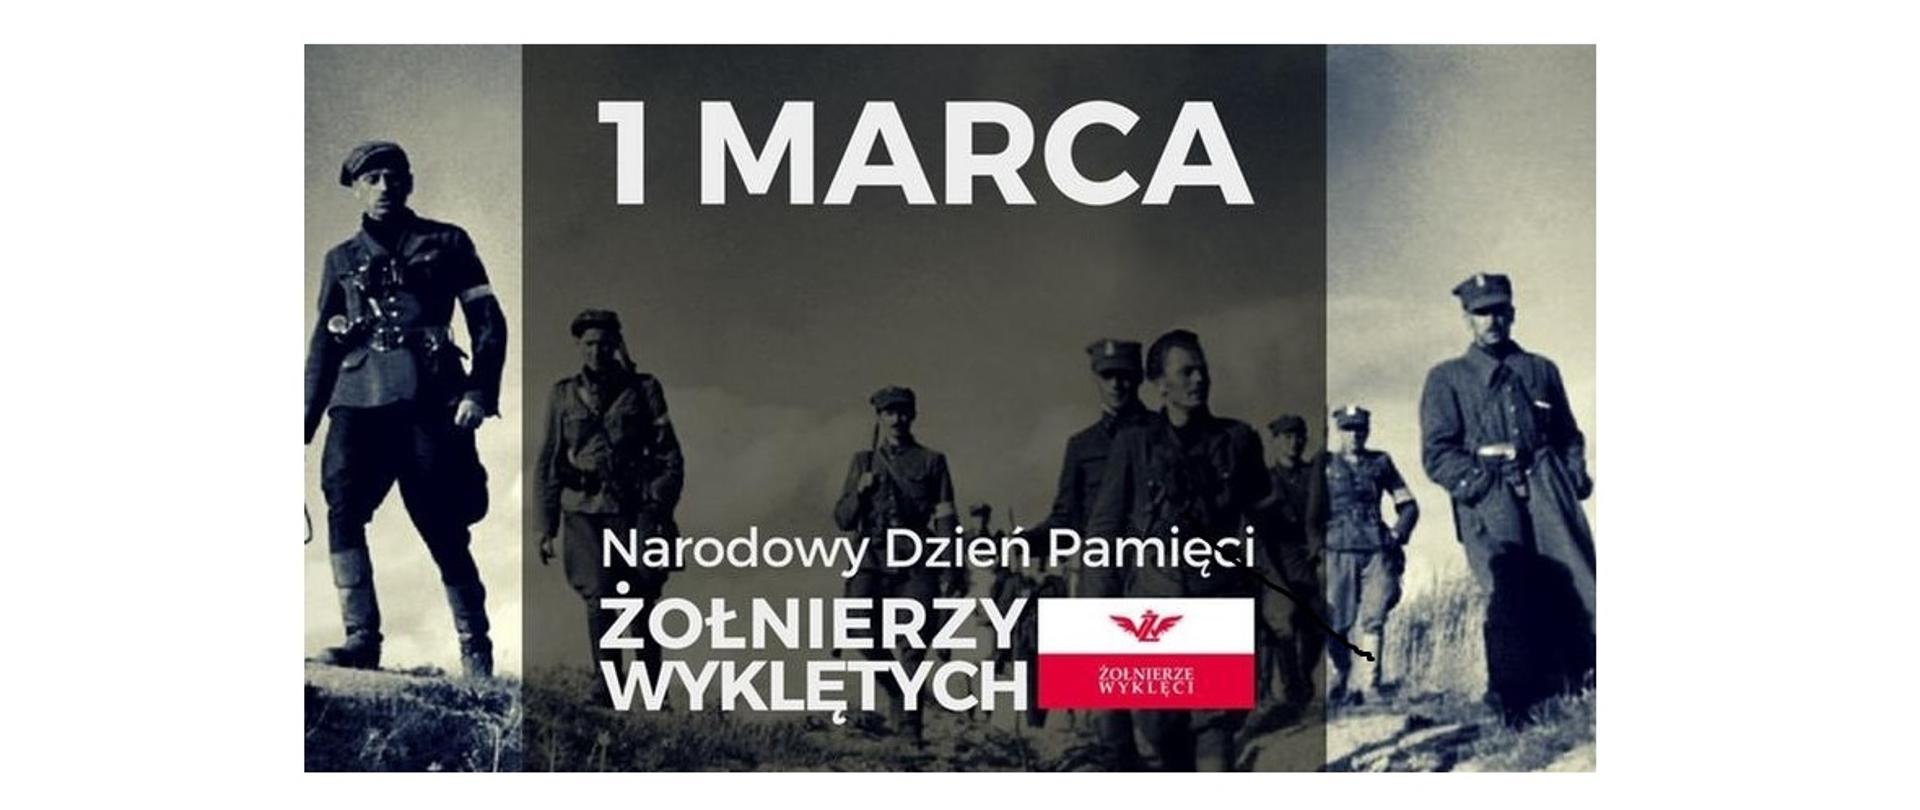 Plakat z okazji narodowego dnia żołnierzy wyklętych: postacie mężczyzn w mundurach z okresu II wojny światowej. Na środku slogan” 1 marca: narodowy dzień pamięci żołnierzy wyklętych”.